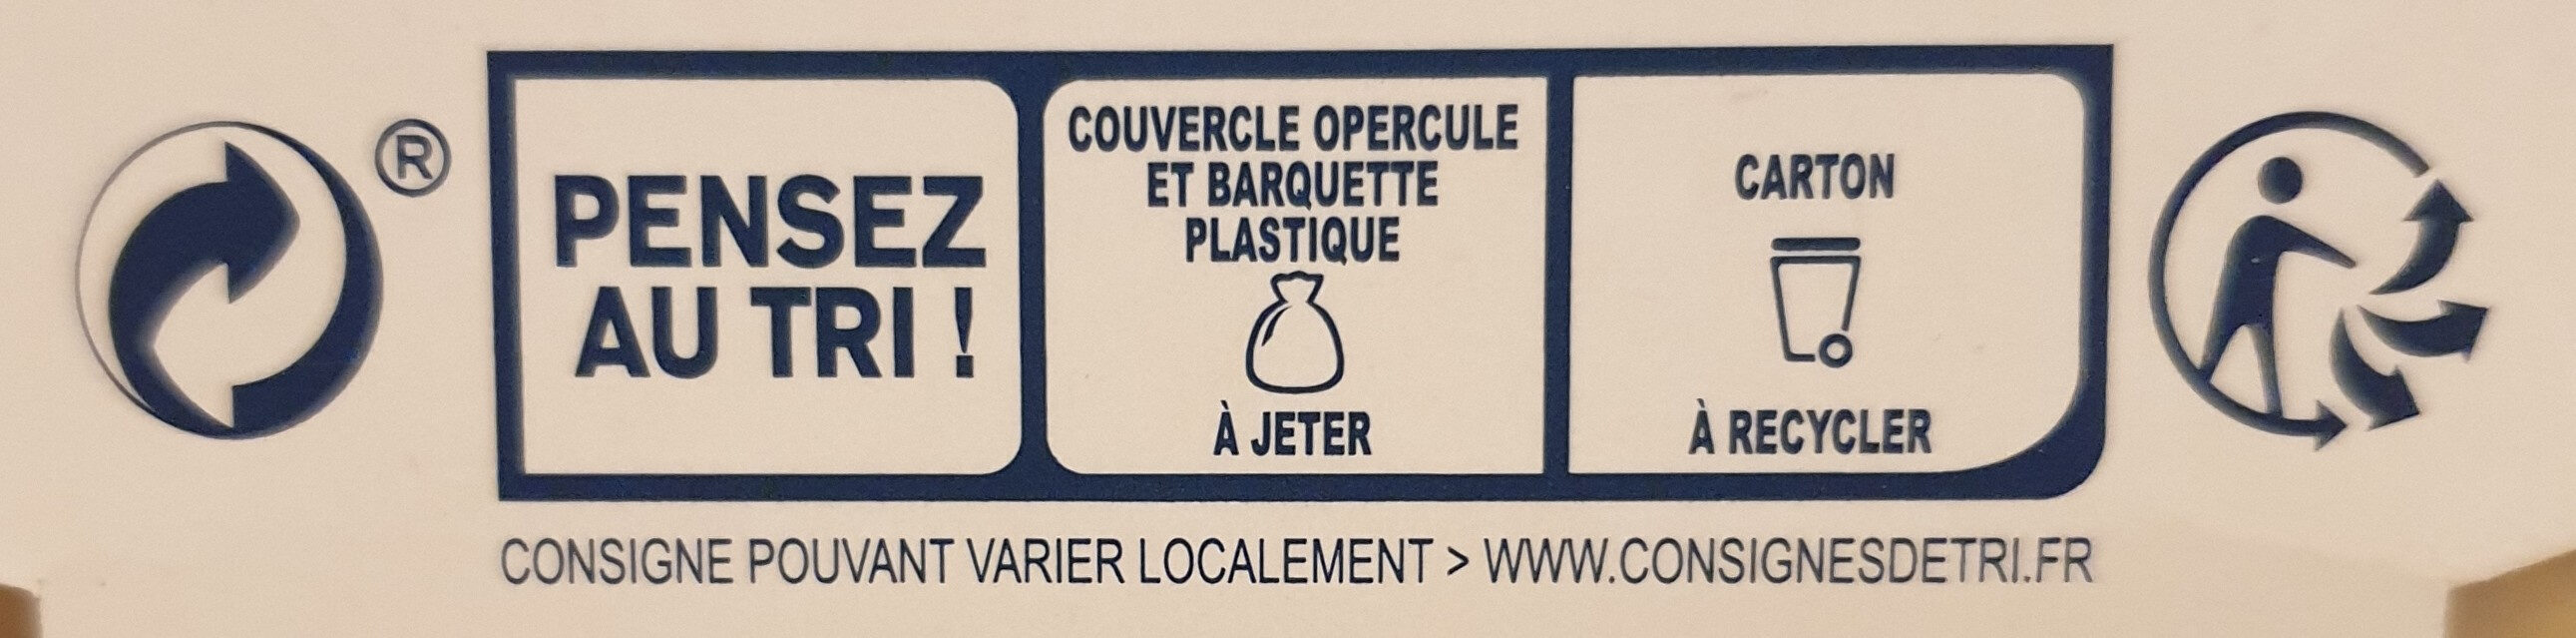 Cœur de filets de harengs - Instrucciones de reciclaje y/o información de embalaje - fr